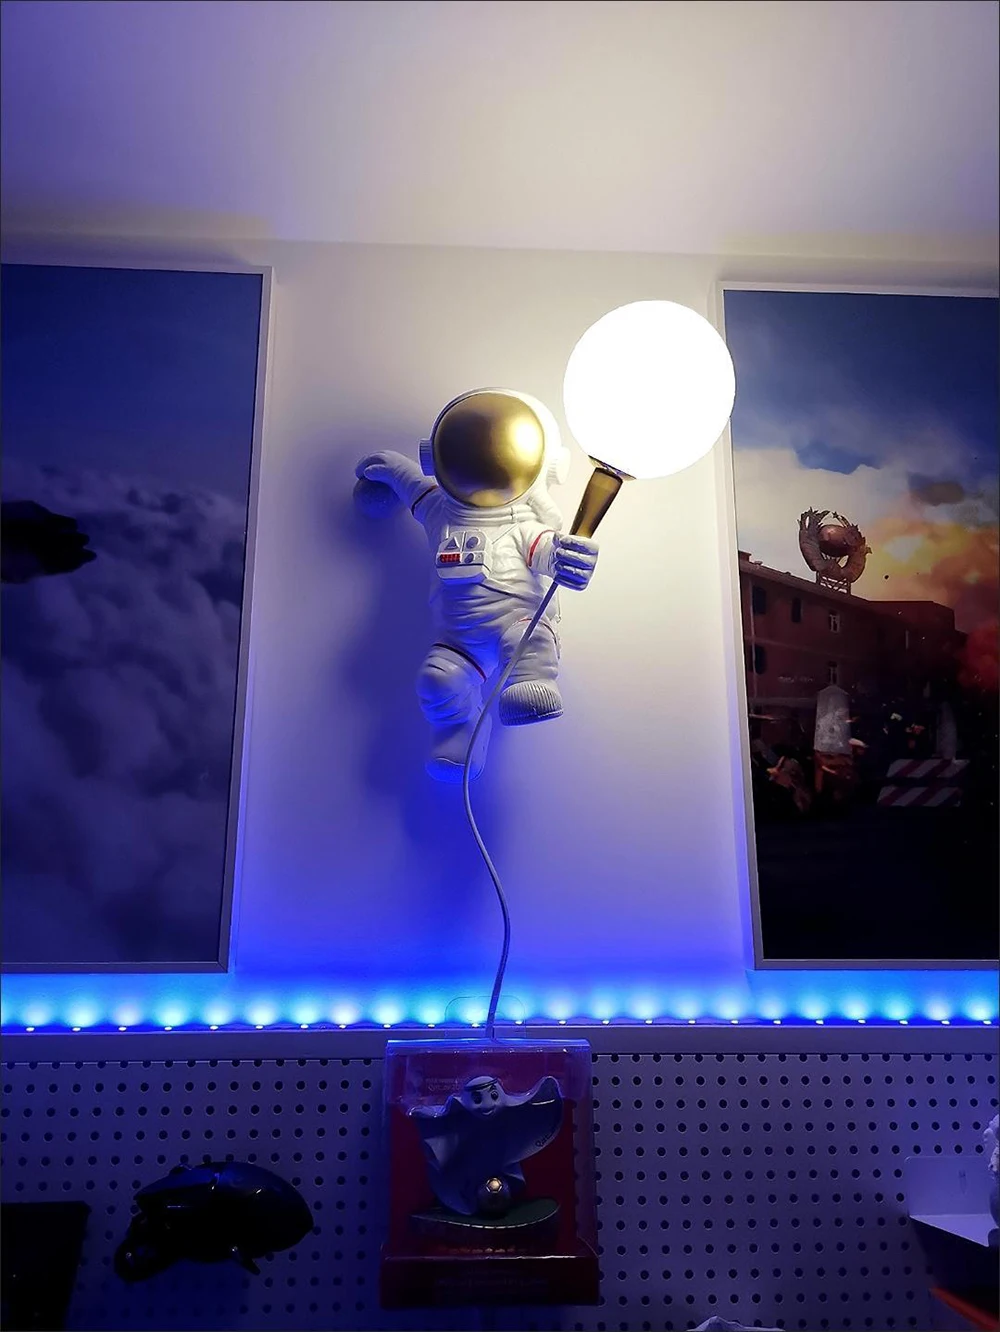 SGROW Nordic LED personality astronaut moon настенный светильник для детской комнаты кухня столовая спальня кабинет балкон лампа для прохода